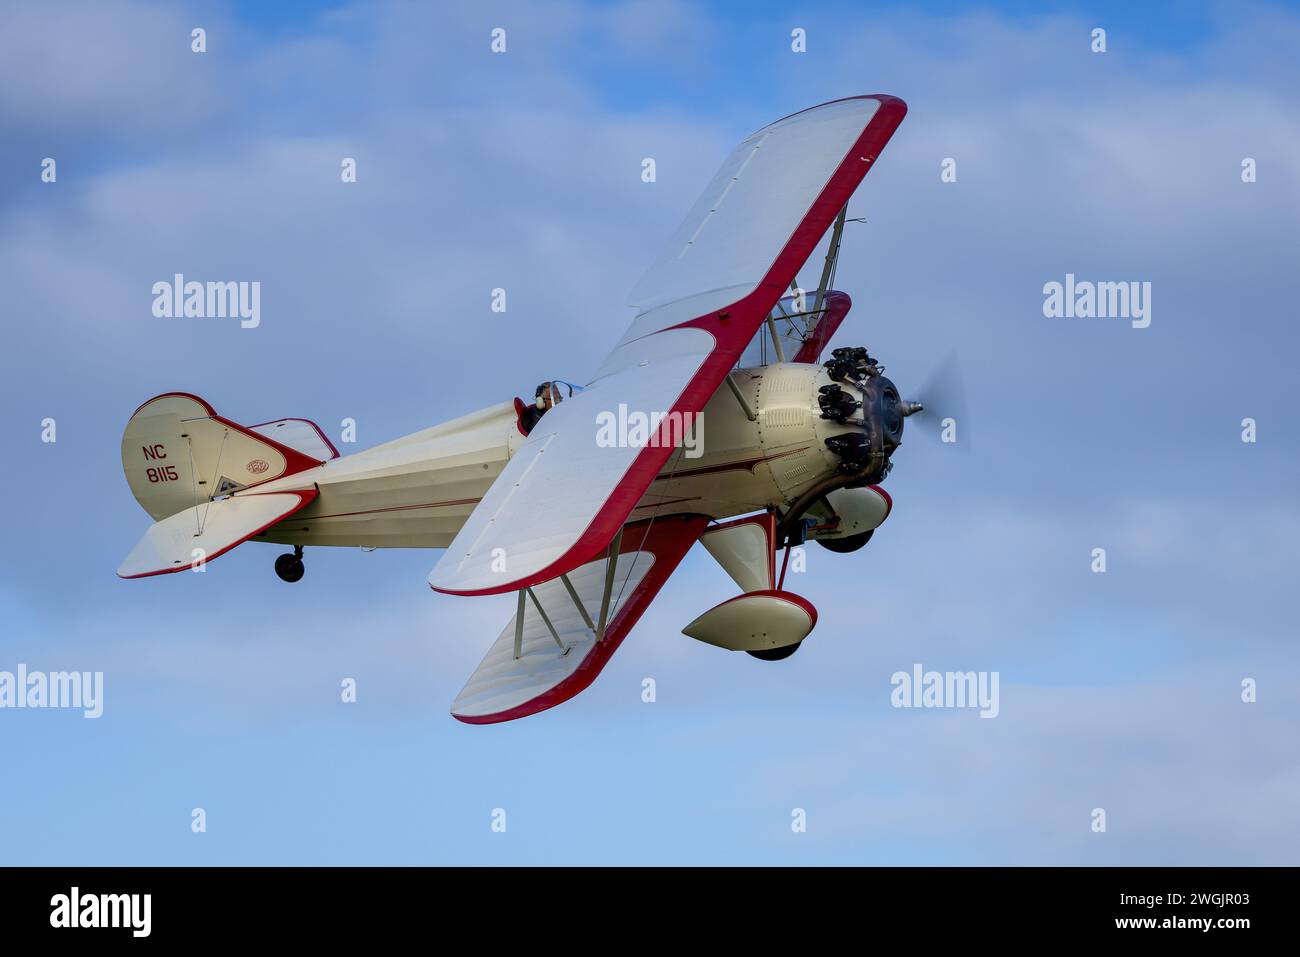 Old Warden, Royaume-Uni - 2 octobre 2022 : avion d'époque Curtiss wright Travel air 4000 vole près du sol Banque D'Images